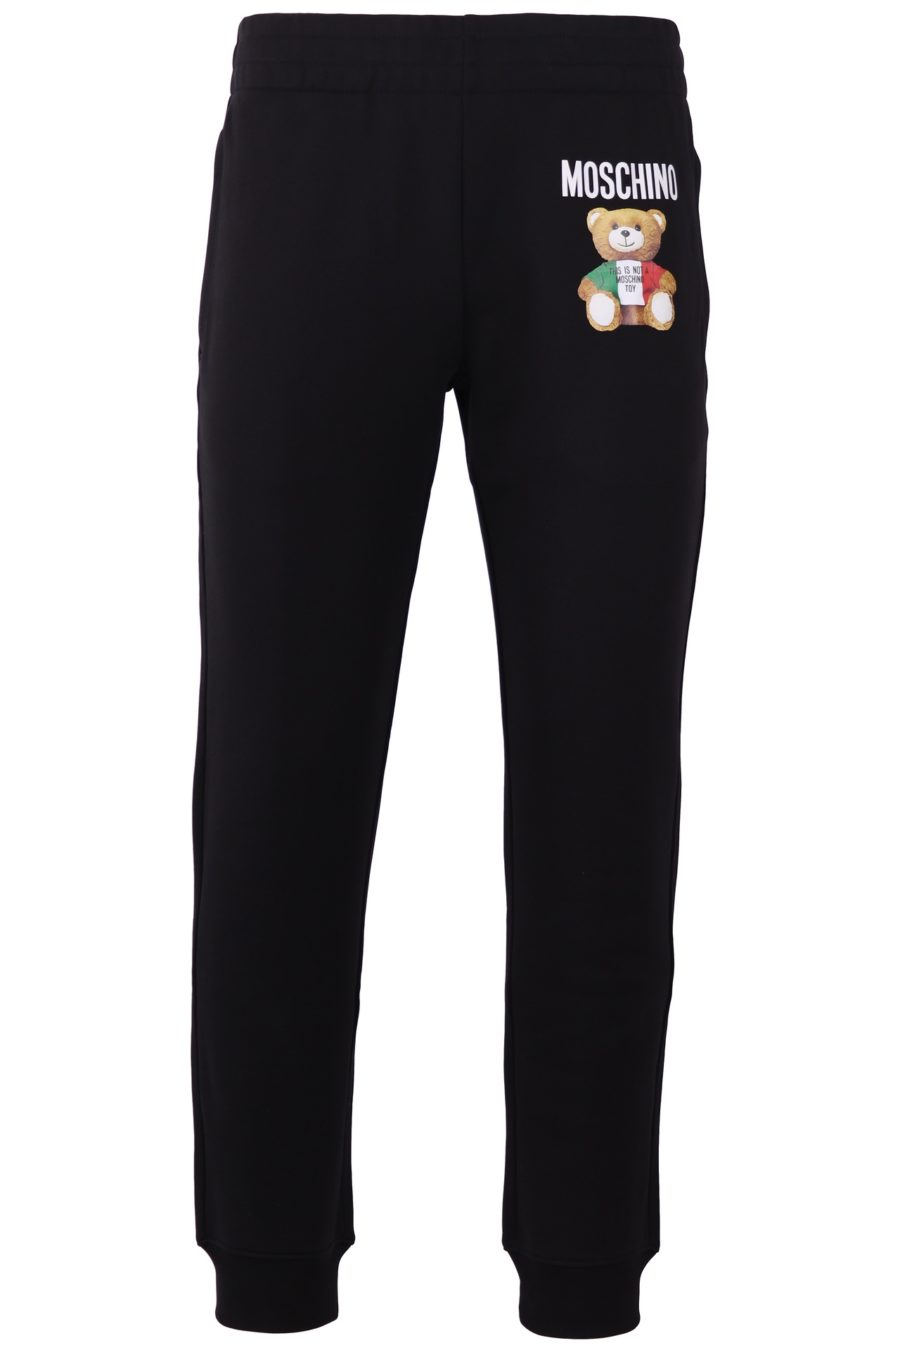 Pantalones de chándal con franjas del logo Moschino de Algodón de color Negro para hombre de gimnasio y entrenamiento de Pantalones de chándal Hombre Ropa de Ropa deportiva 